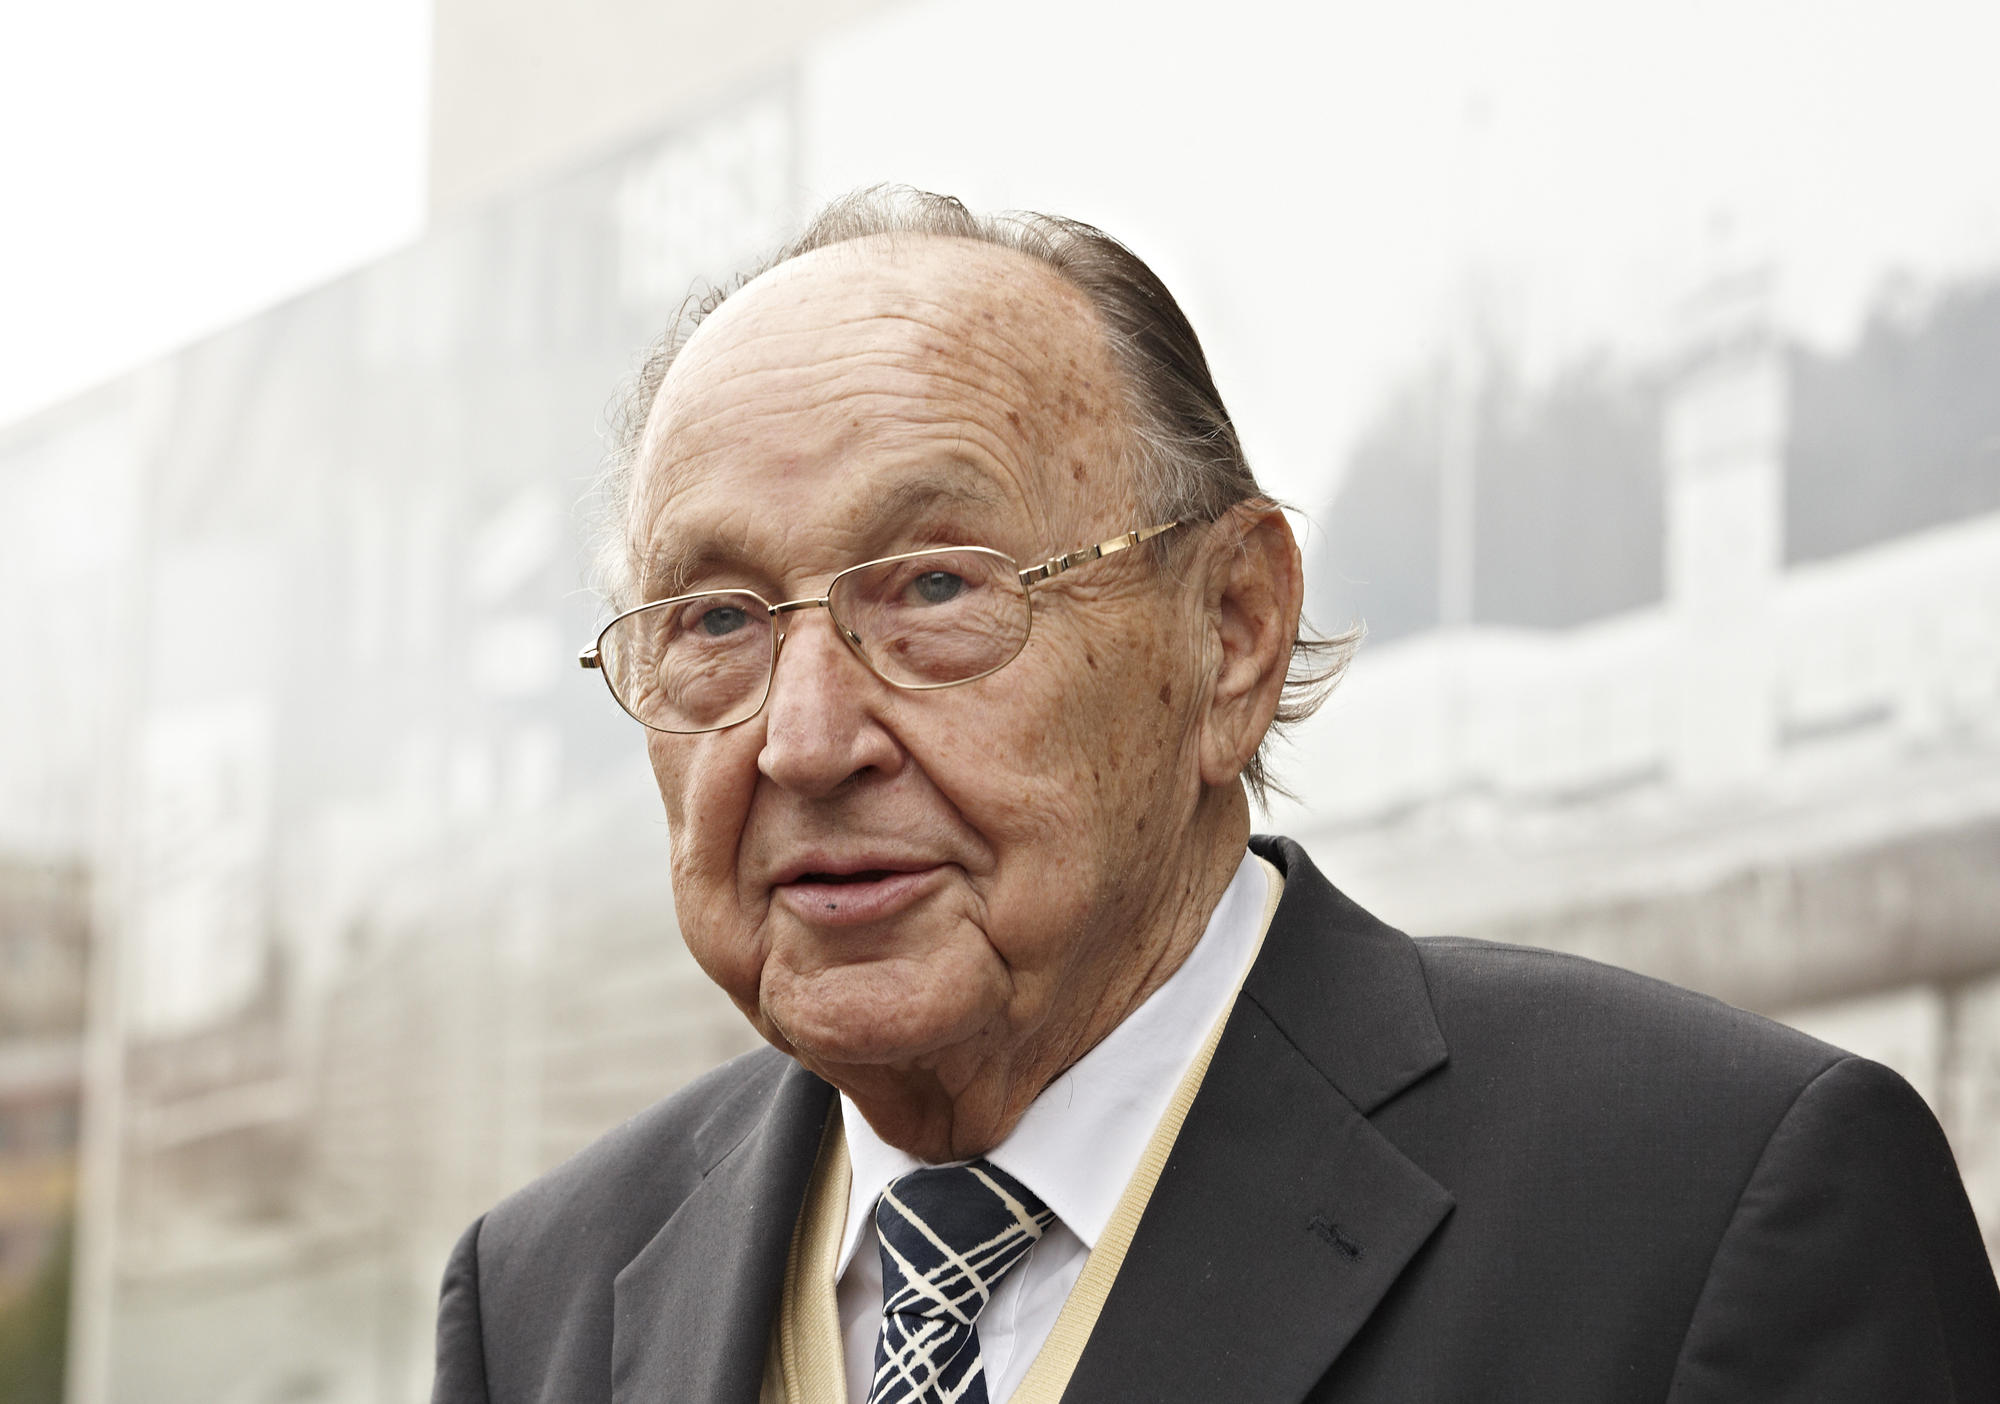 Hans-Dietrich Genscher im Jahr 2011. Der ehemalige Bundesaußenminister starb in der vergangenen Woche im Alter von 89 Jahren.